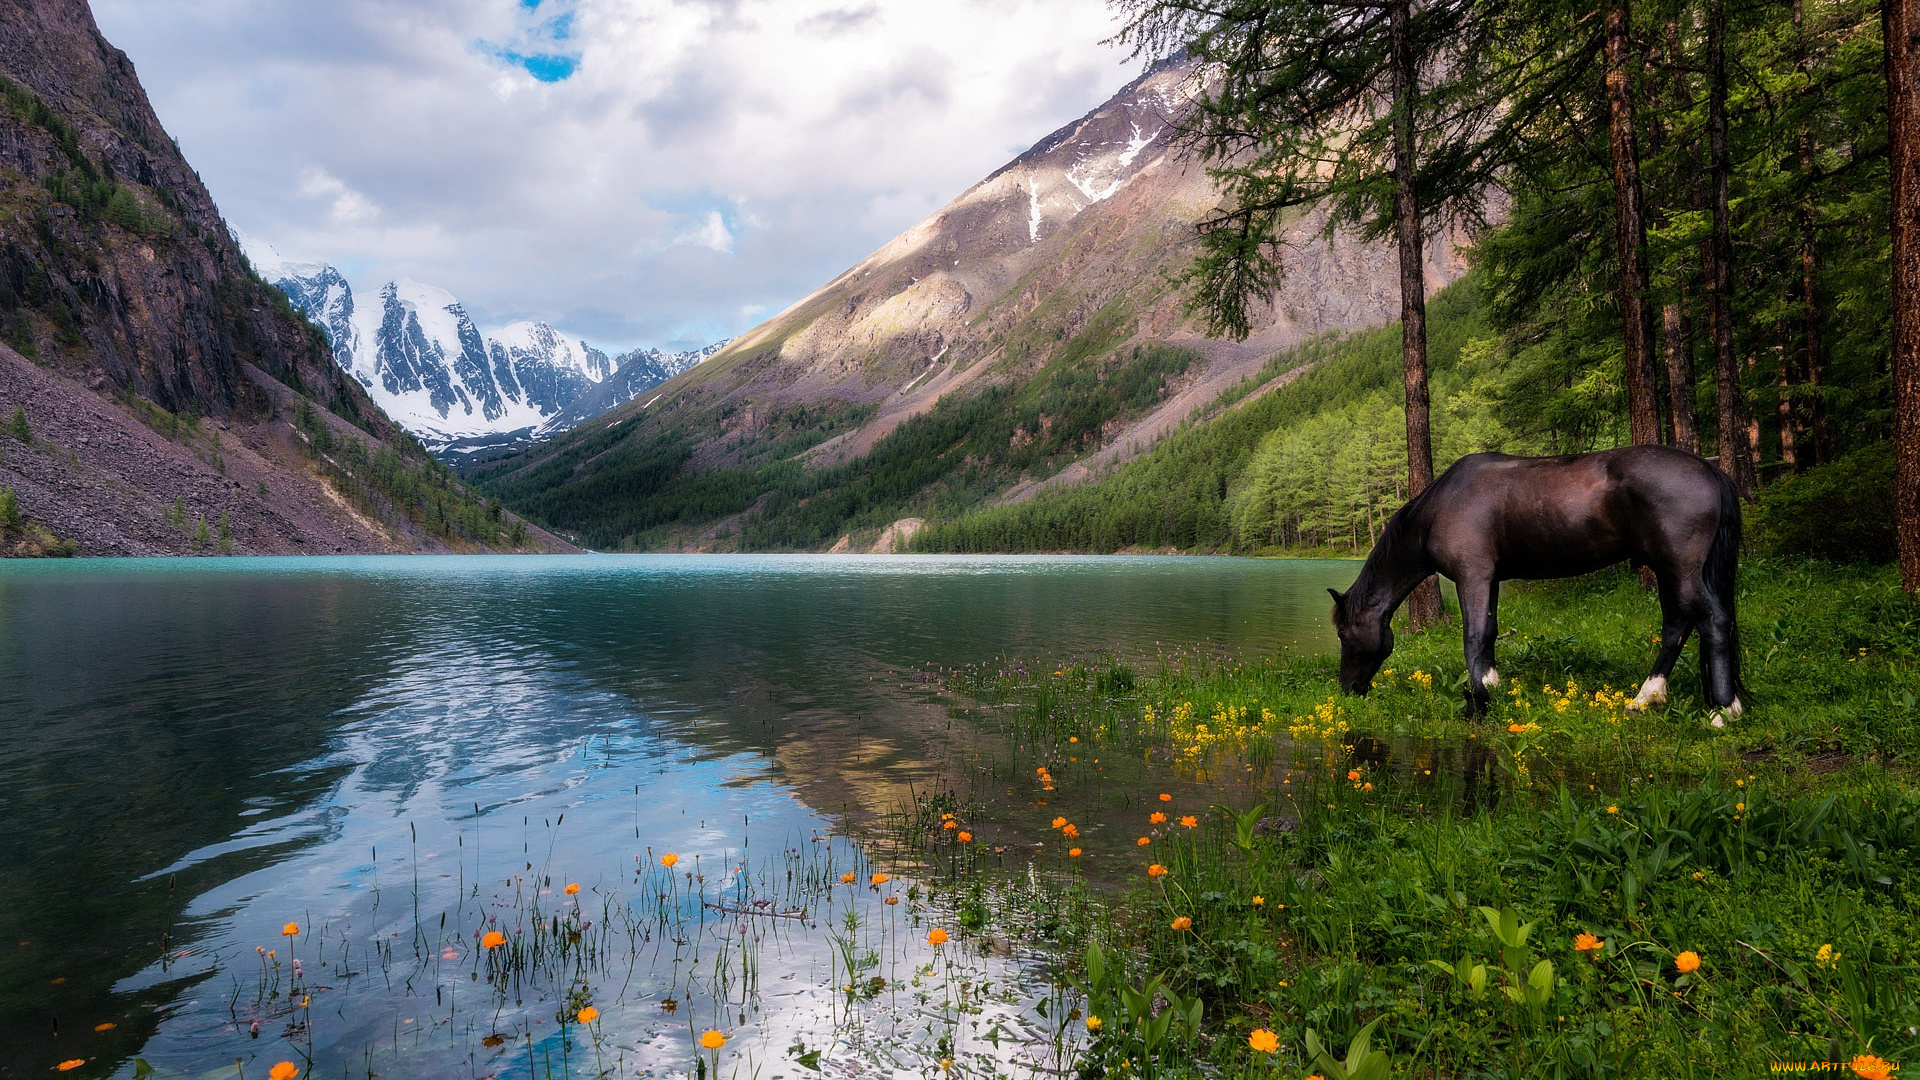 животные, лошади, озеро, цветы, пейзаж, вороной, отражение, жарки, облака, алтай, водоем, природа, водопой, россия, сосны, горы, лес, небо, конь, лошадь